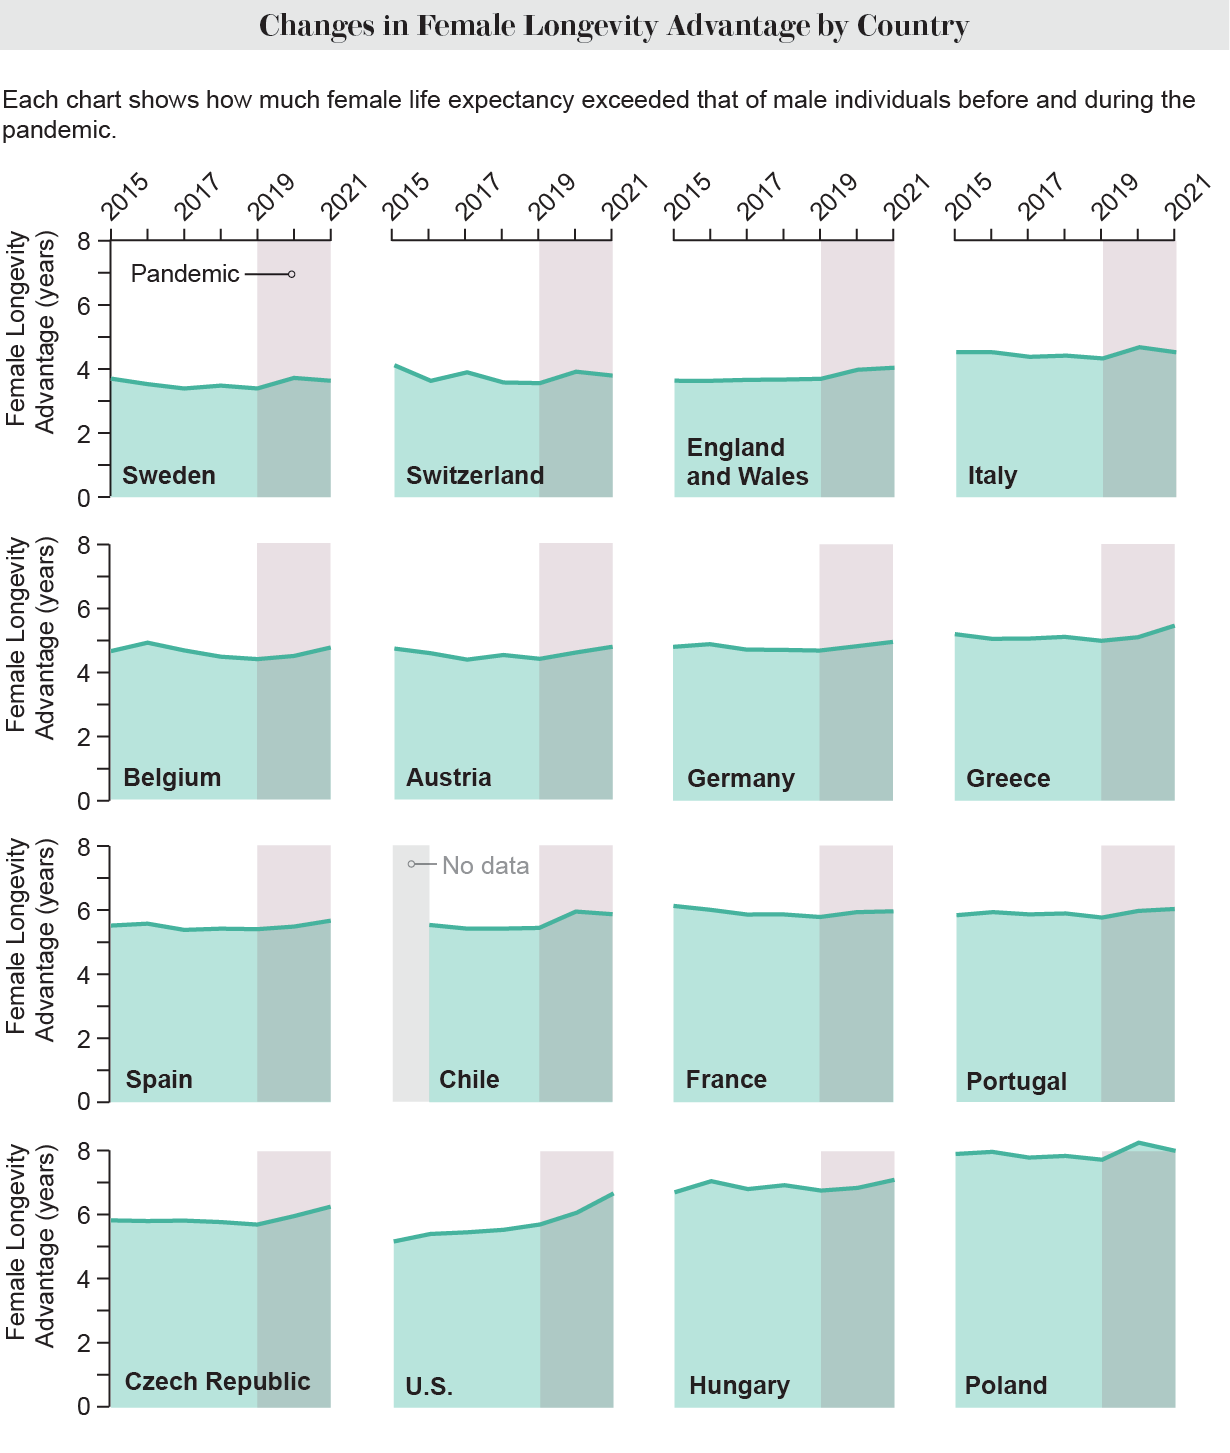 Alan çizelgeleri, 2015'ten 2021'e kadar 16 ülke veya bölgede kadınların yaşam beklentisinin erkeklerin yaşam beklentisini ne kadar aştığını gösteriyor.